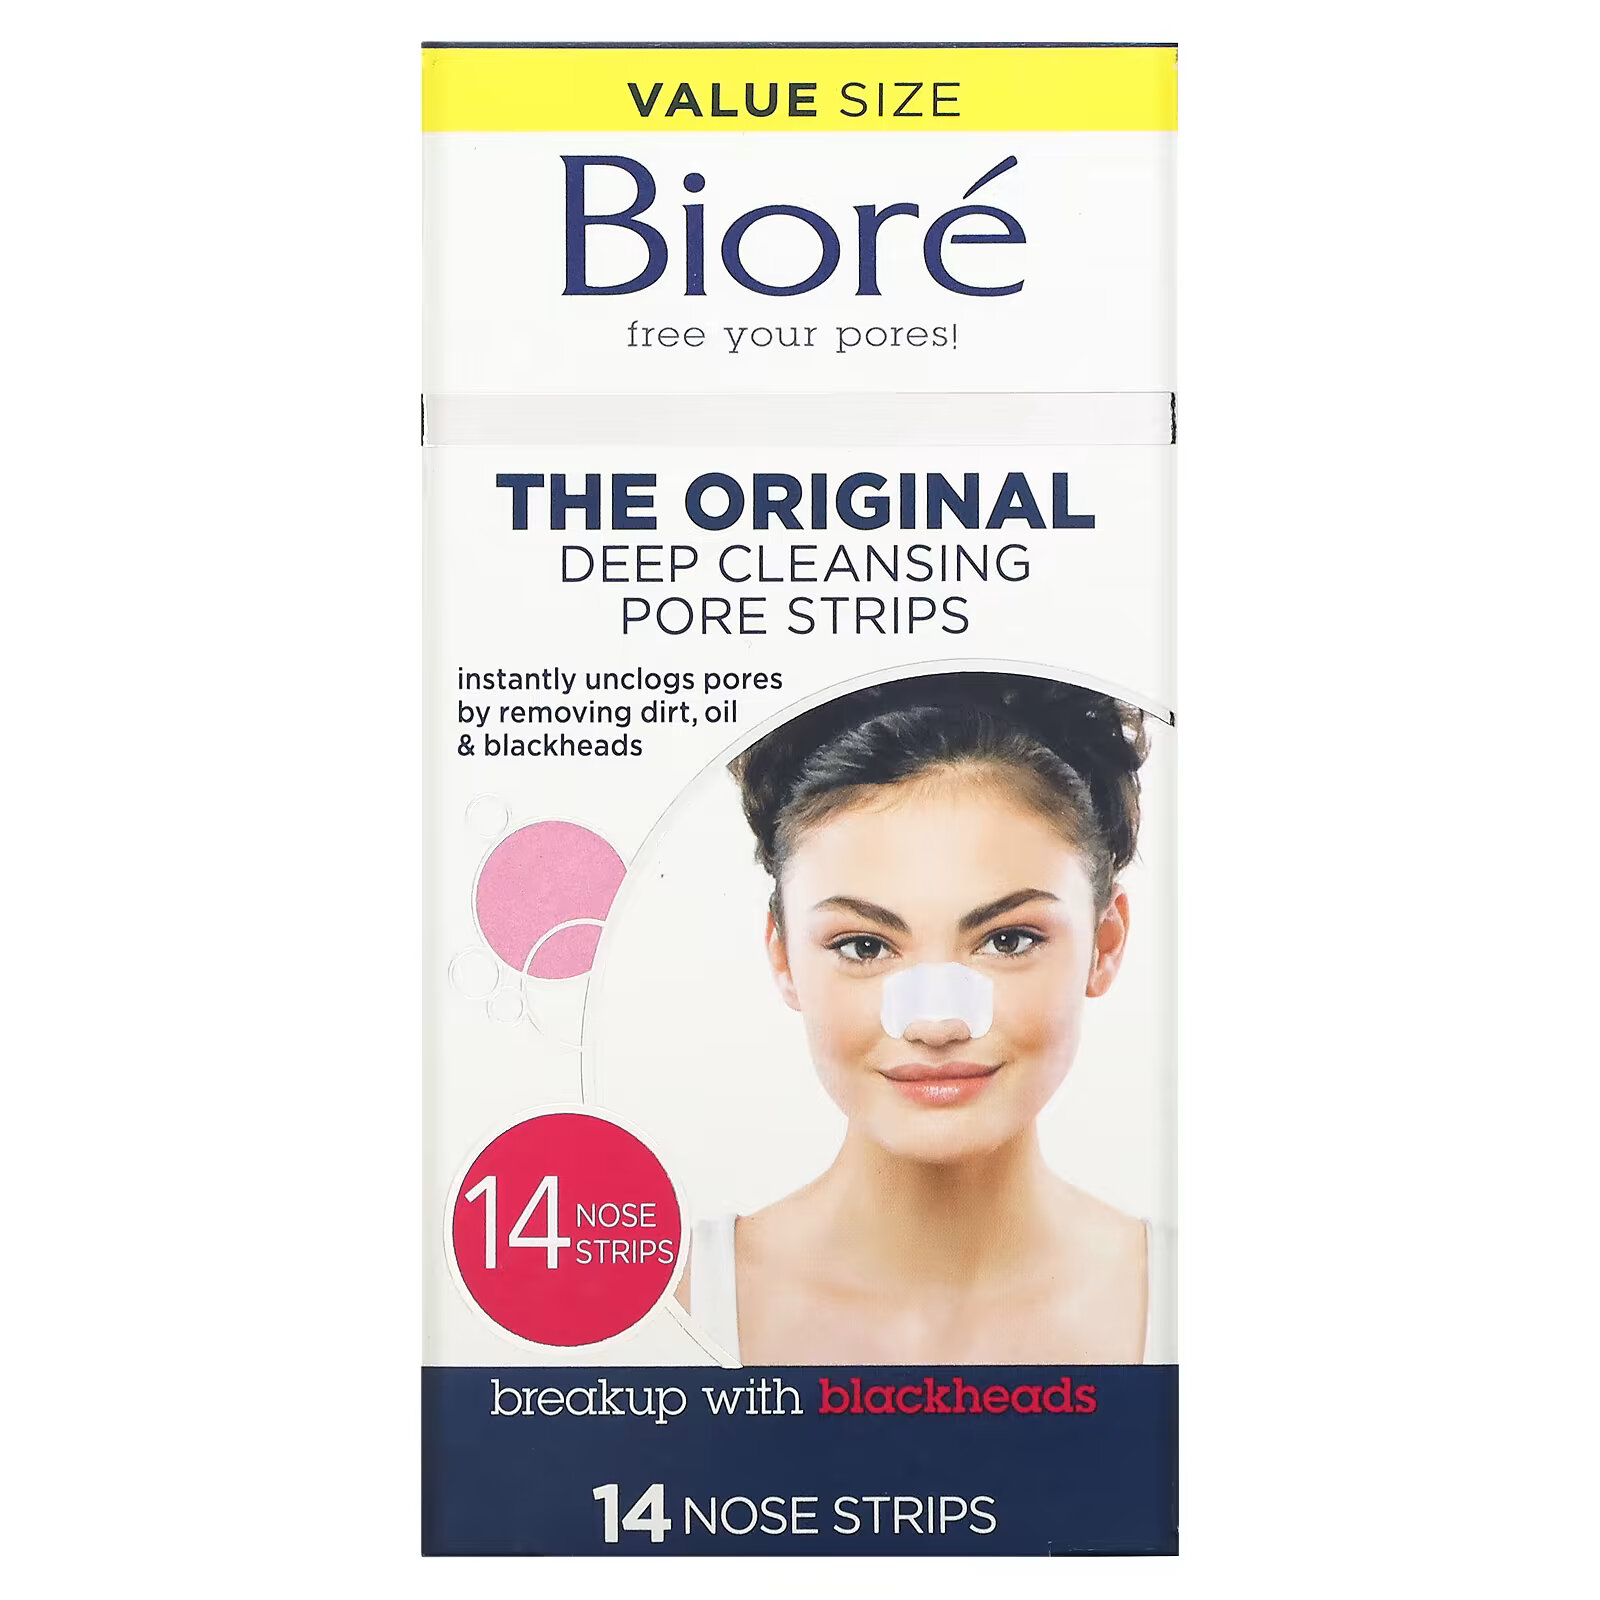 biore полоски с углем для глубокого очищения пор 6 полосок для носа Biore, оригинальные полоски для глубокого очищения пор, 14 полосок для носа